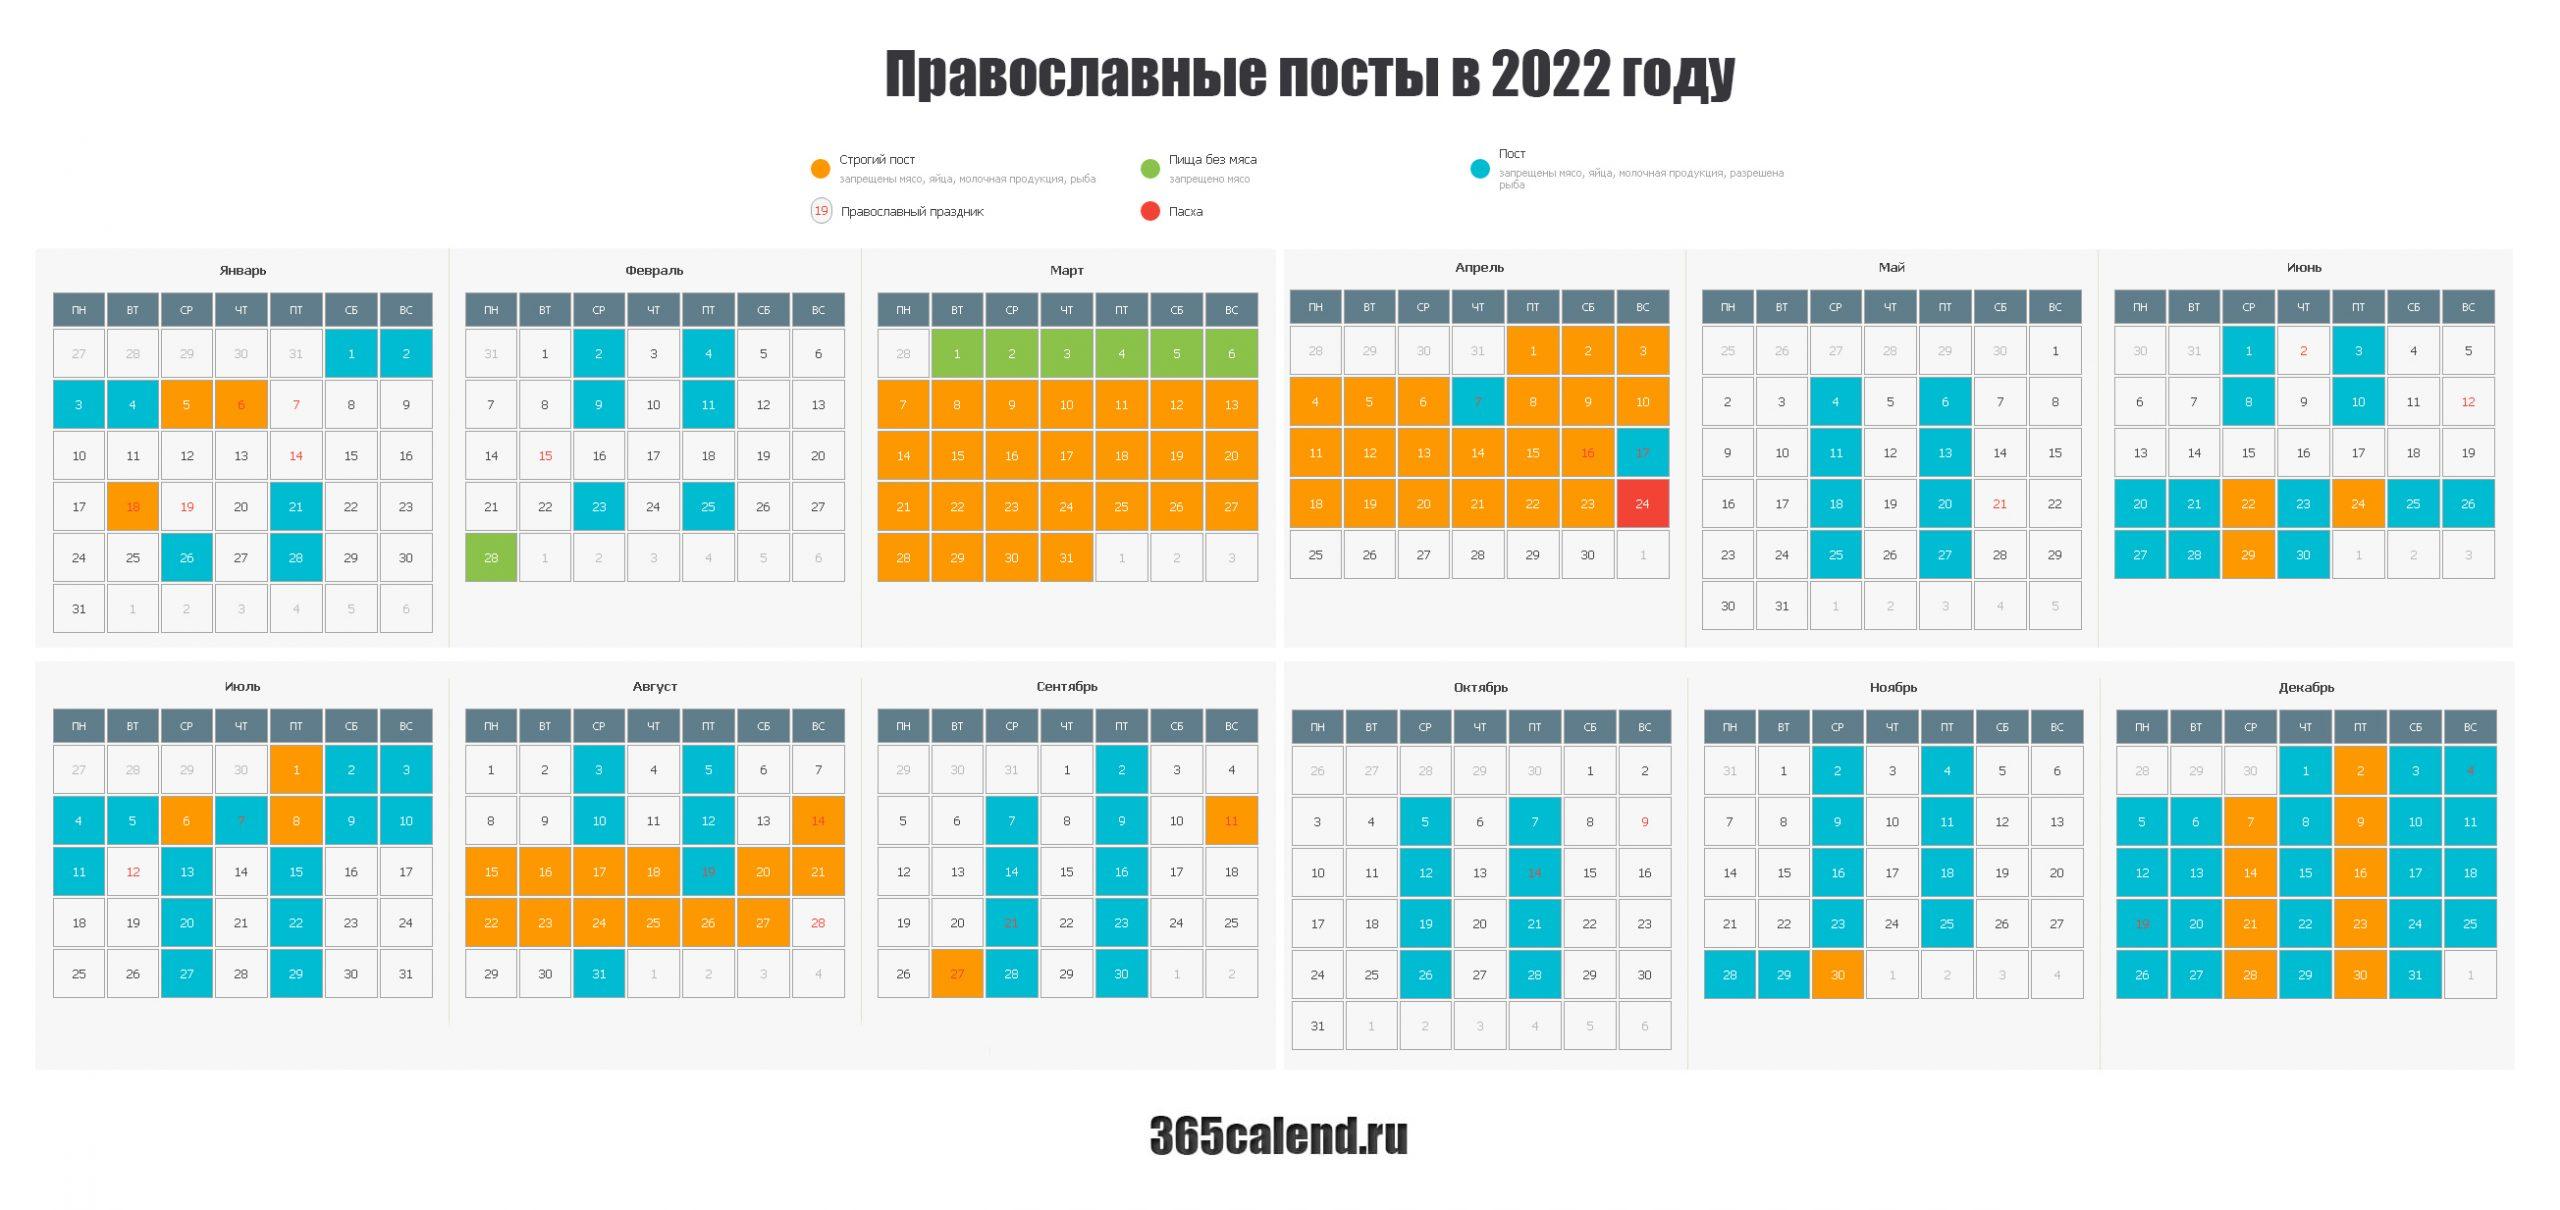 В 2017 году отметит. Посты в 2022 году православные. Посты в 2022 году православные календарь. Пост православный 2022. Христианские посты в 2022 году.